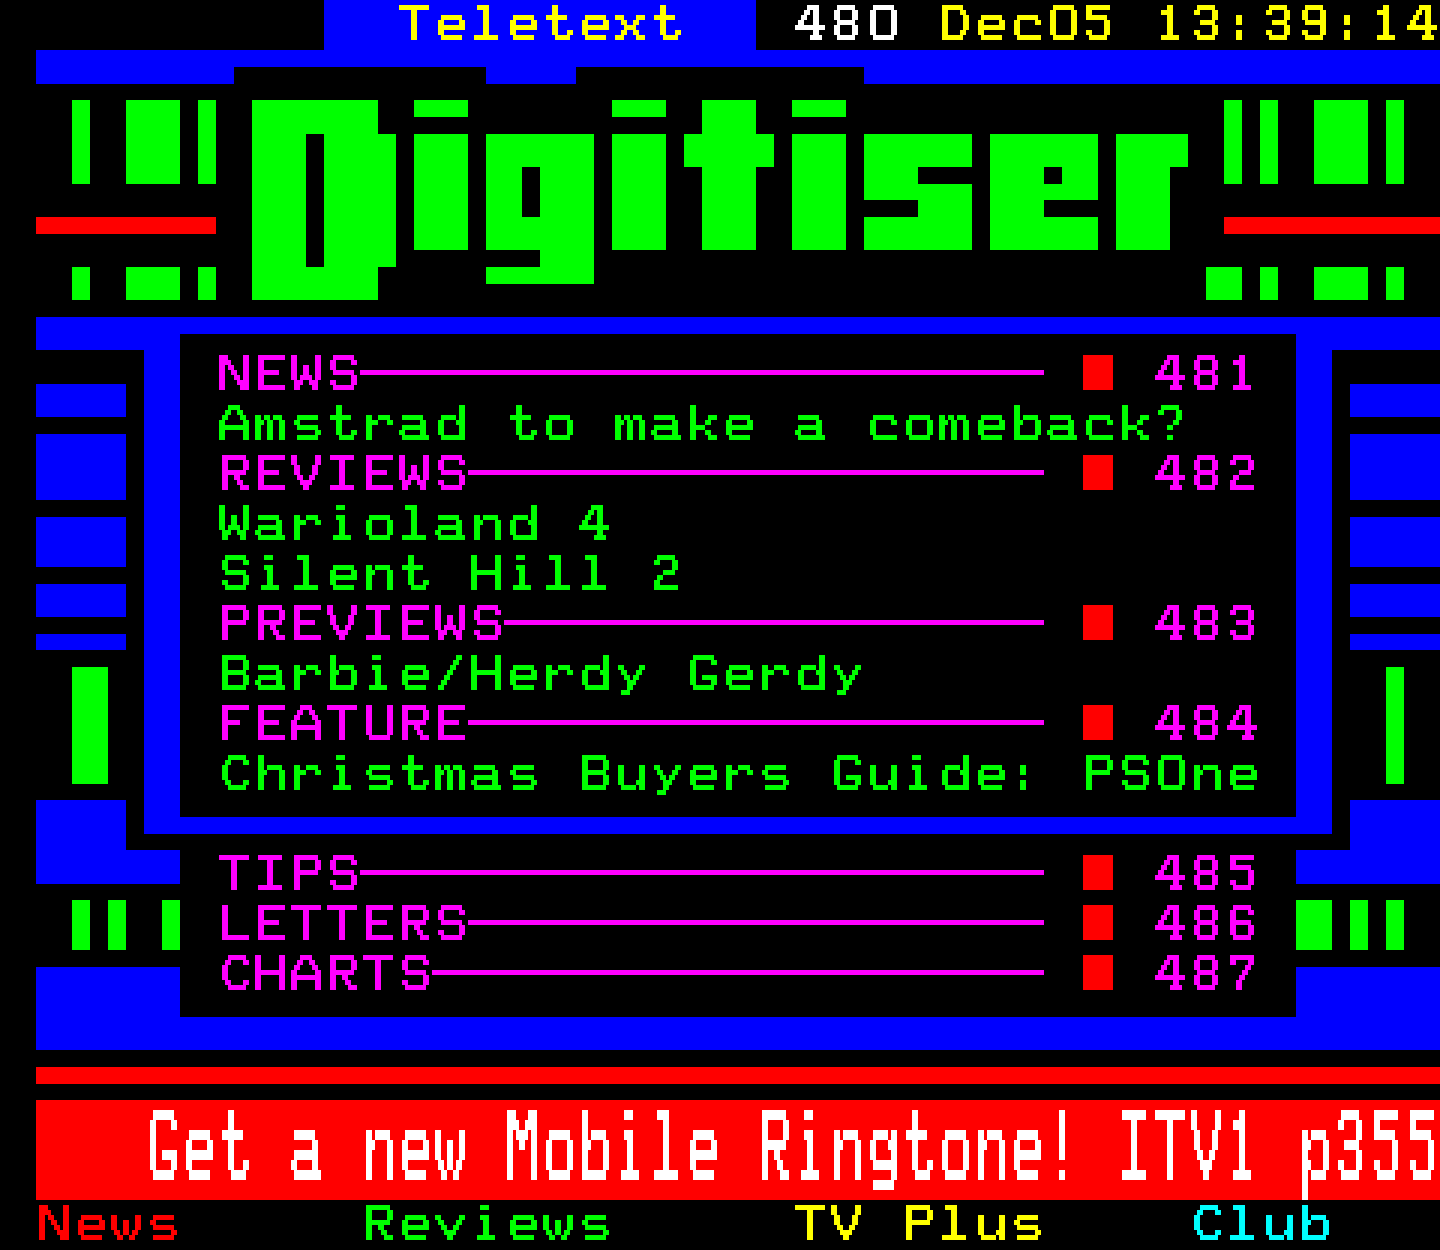 Digitiser, Teletext - 2001